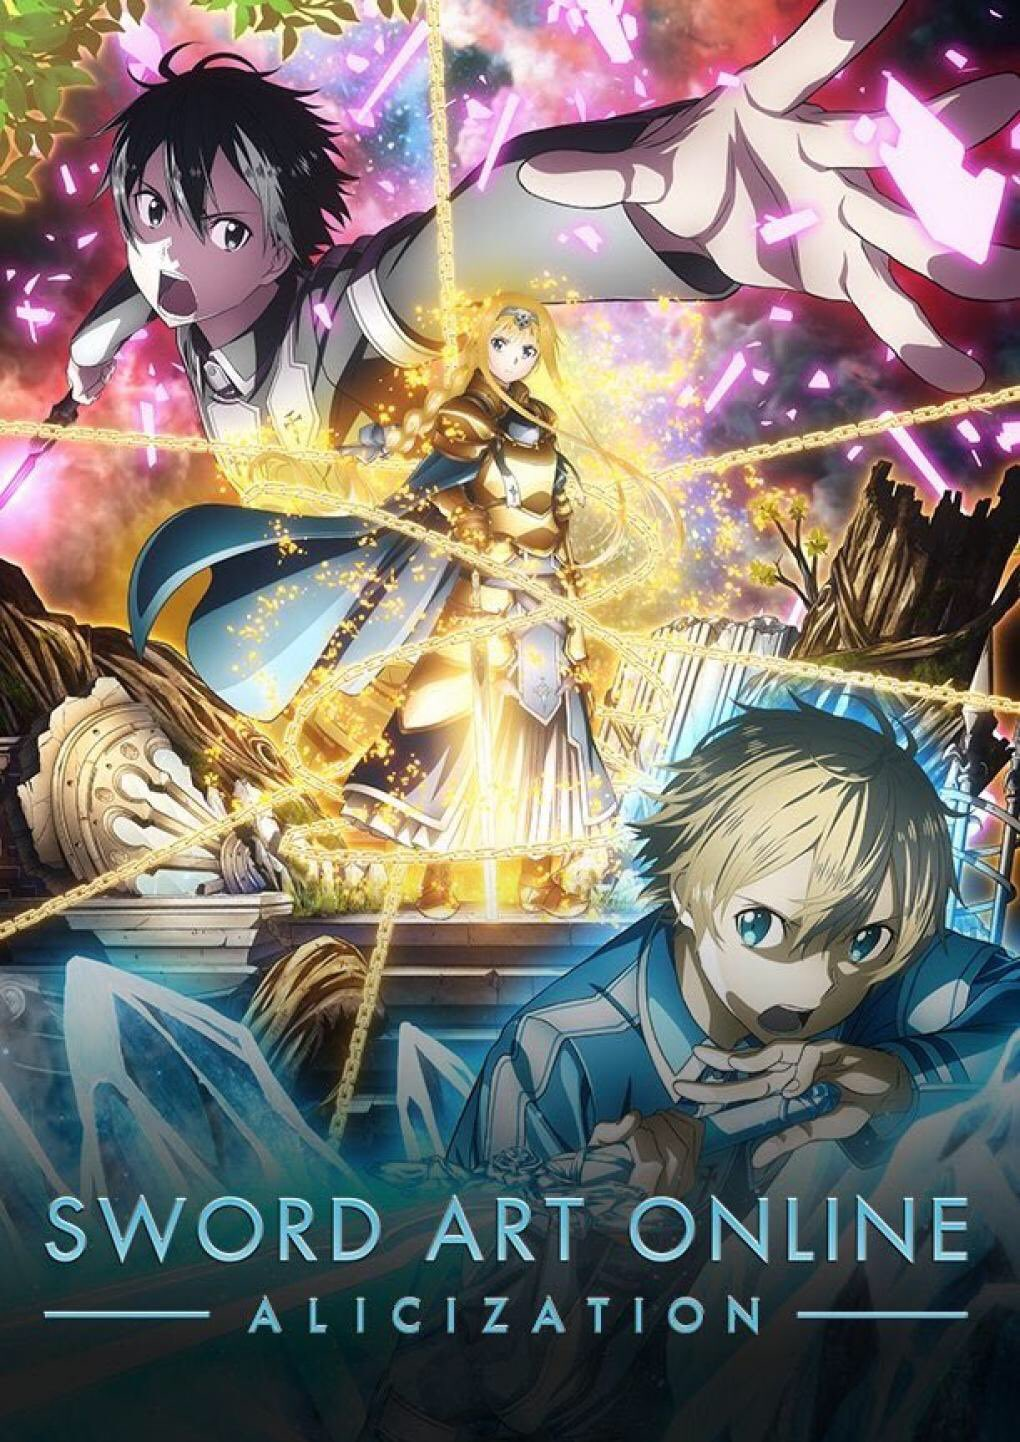 Sword-Art-Online-Alicization-key-visual